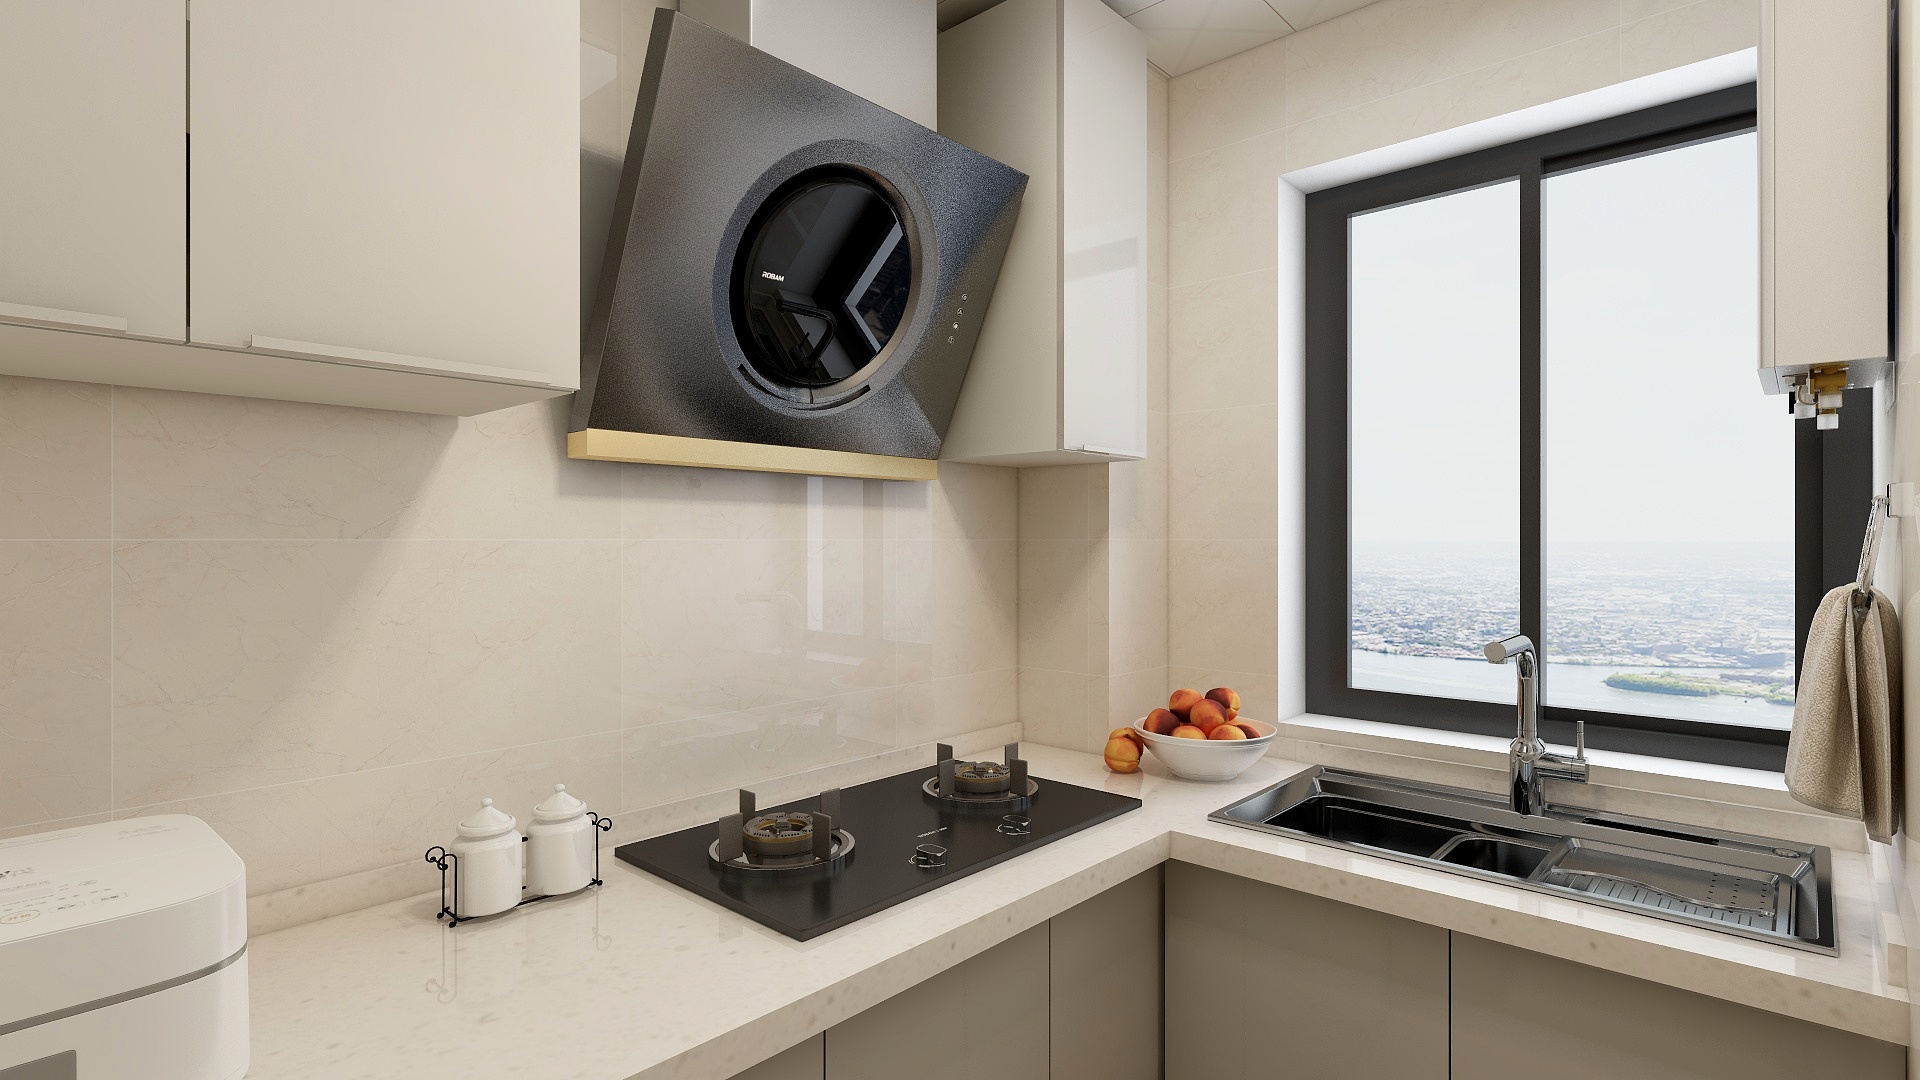 厨房空间利用有温度感的白色作为主题，配以厚实的橱柜设计，令空间中带有淡淡的优雅感。